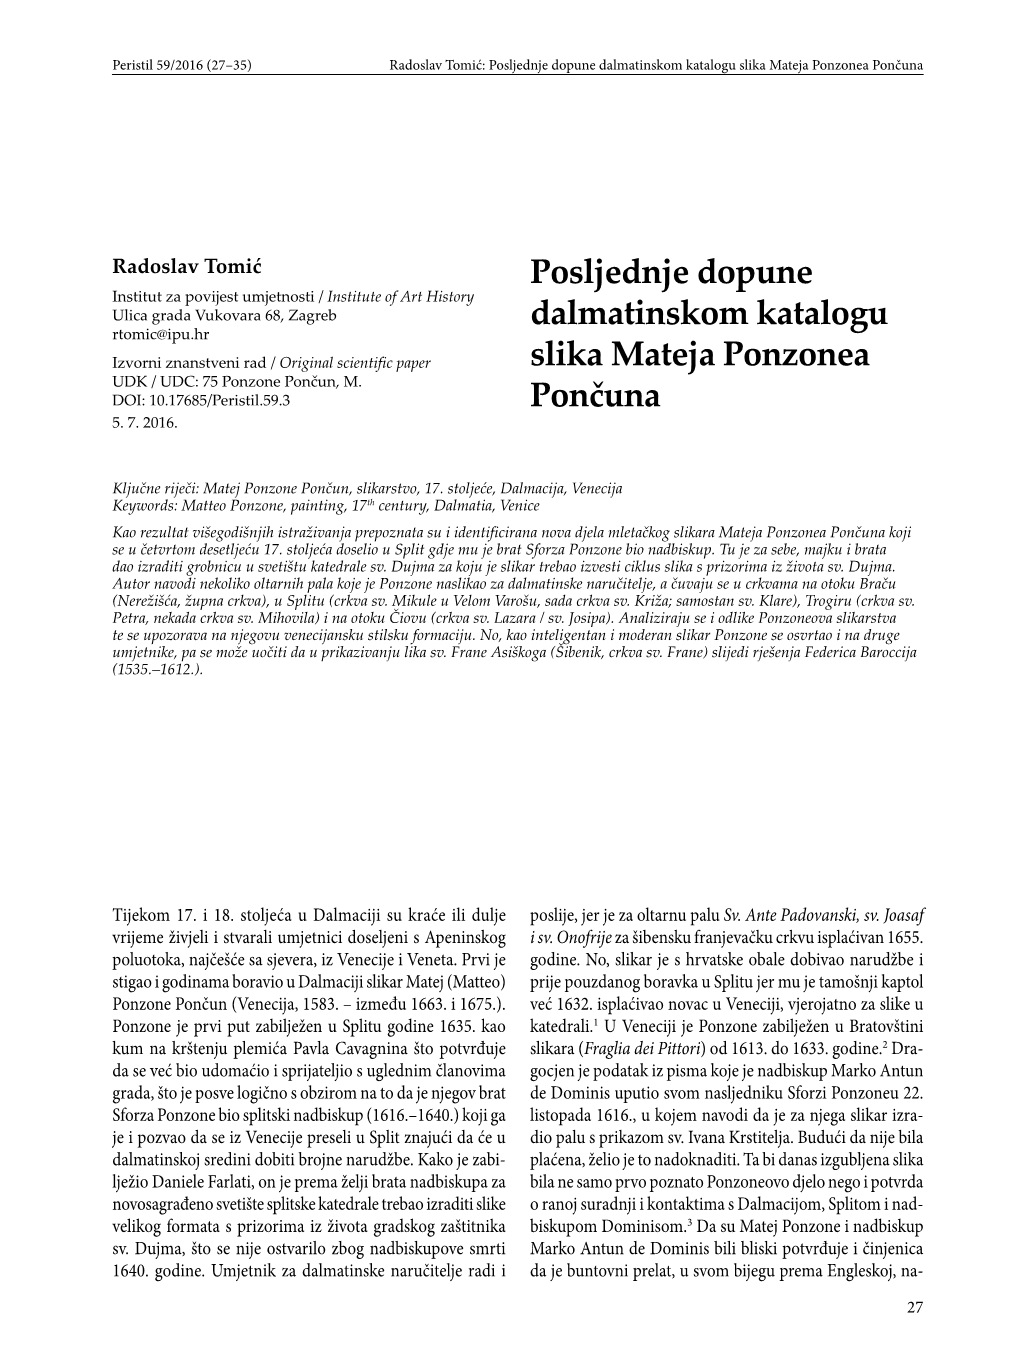 Posljednje Dopune Dalmatinskom Katalogu Slika Mateja Ponzonea Pončuna